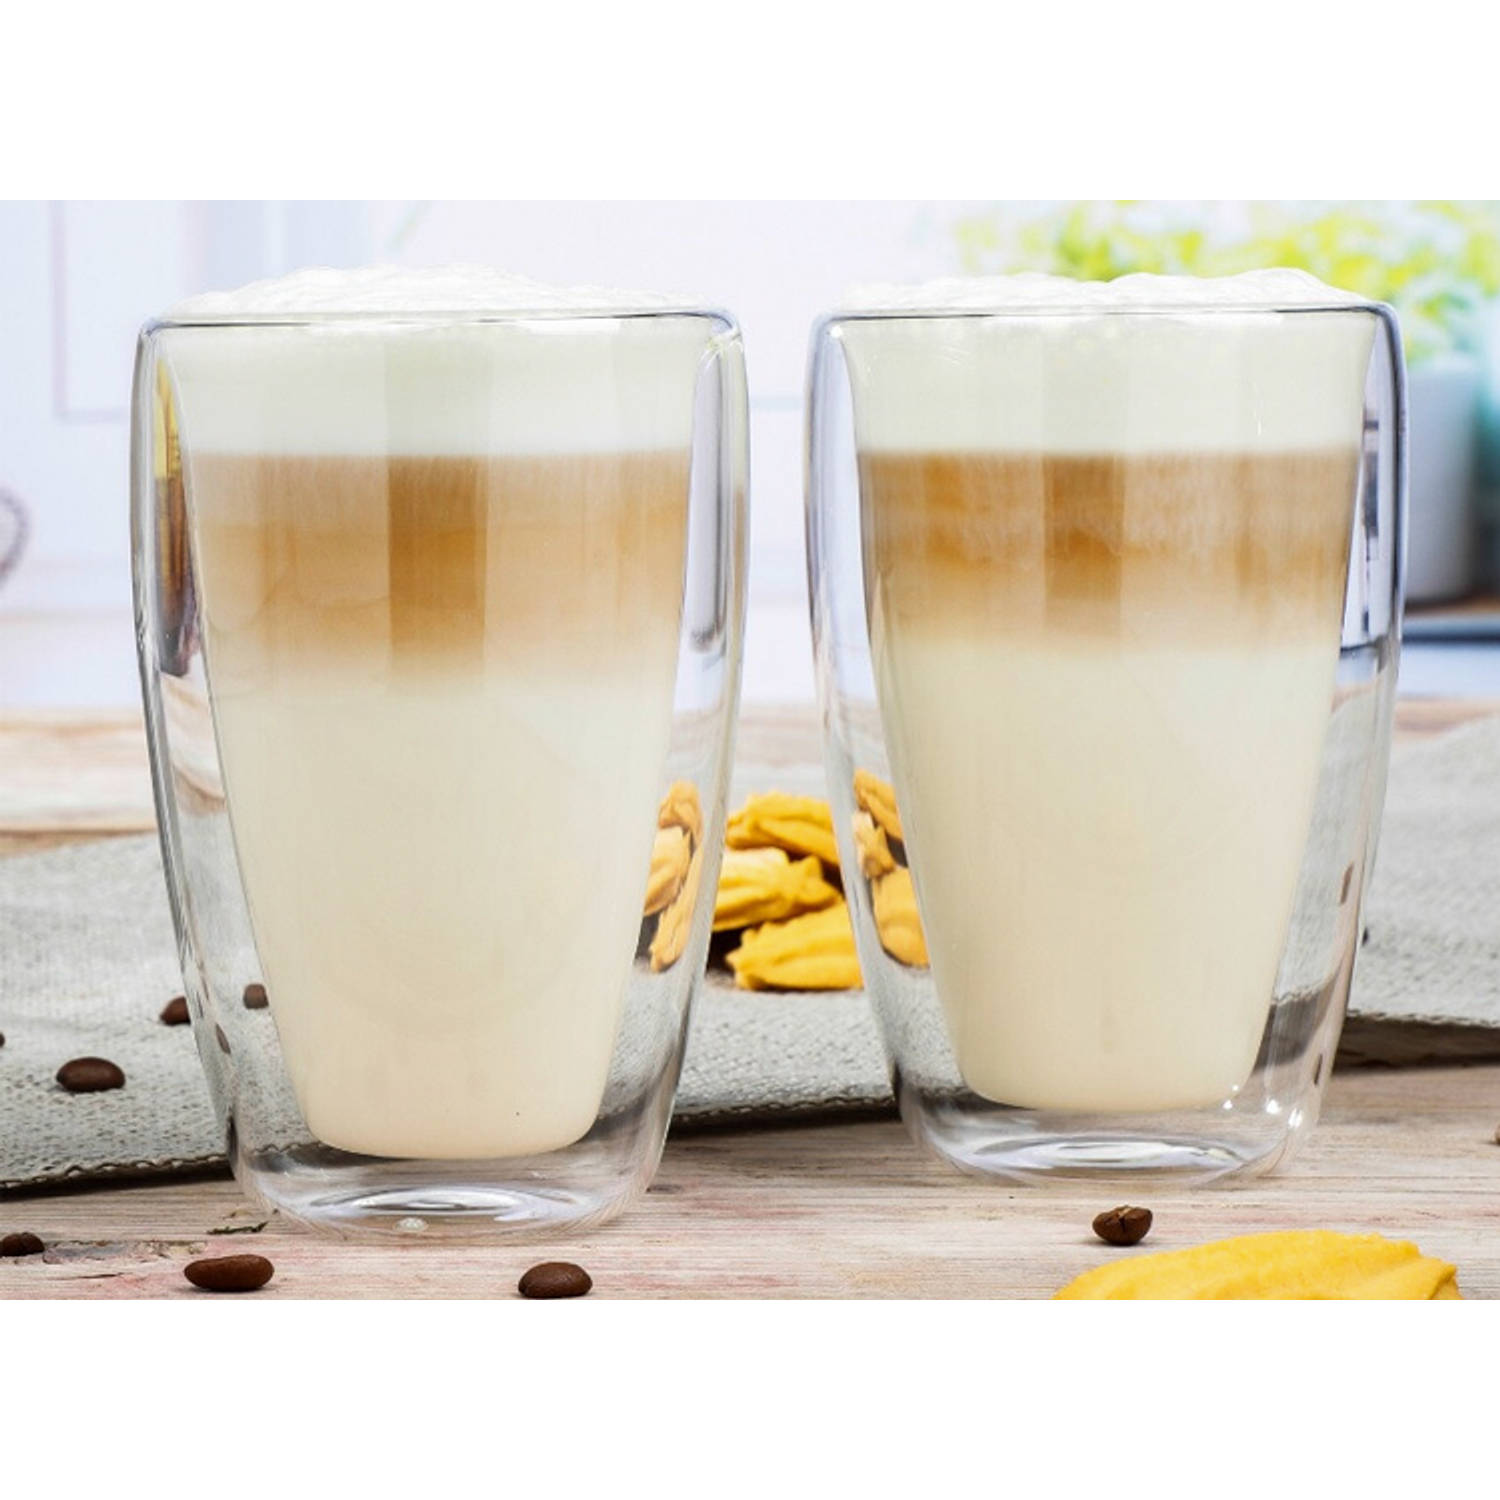 slang zij is cap Premium Latte Macchiato glazen - 2 Stuks | Blokker